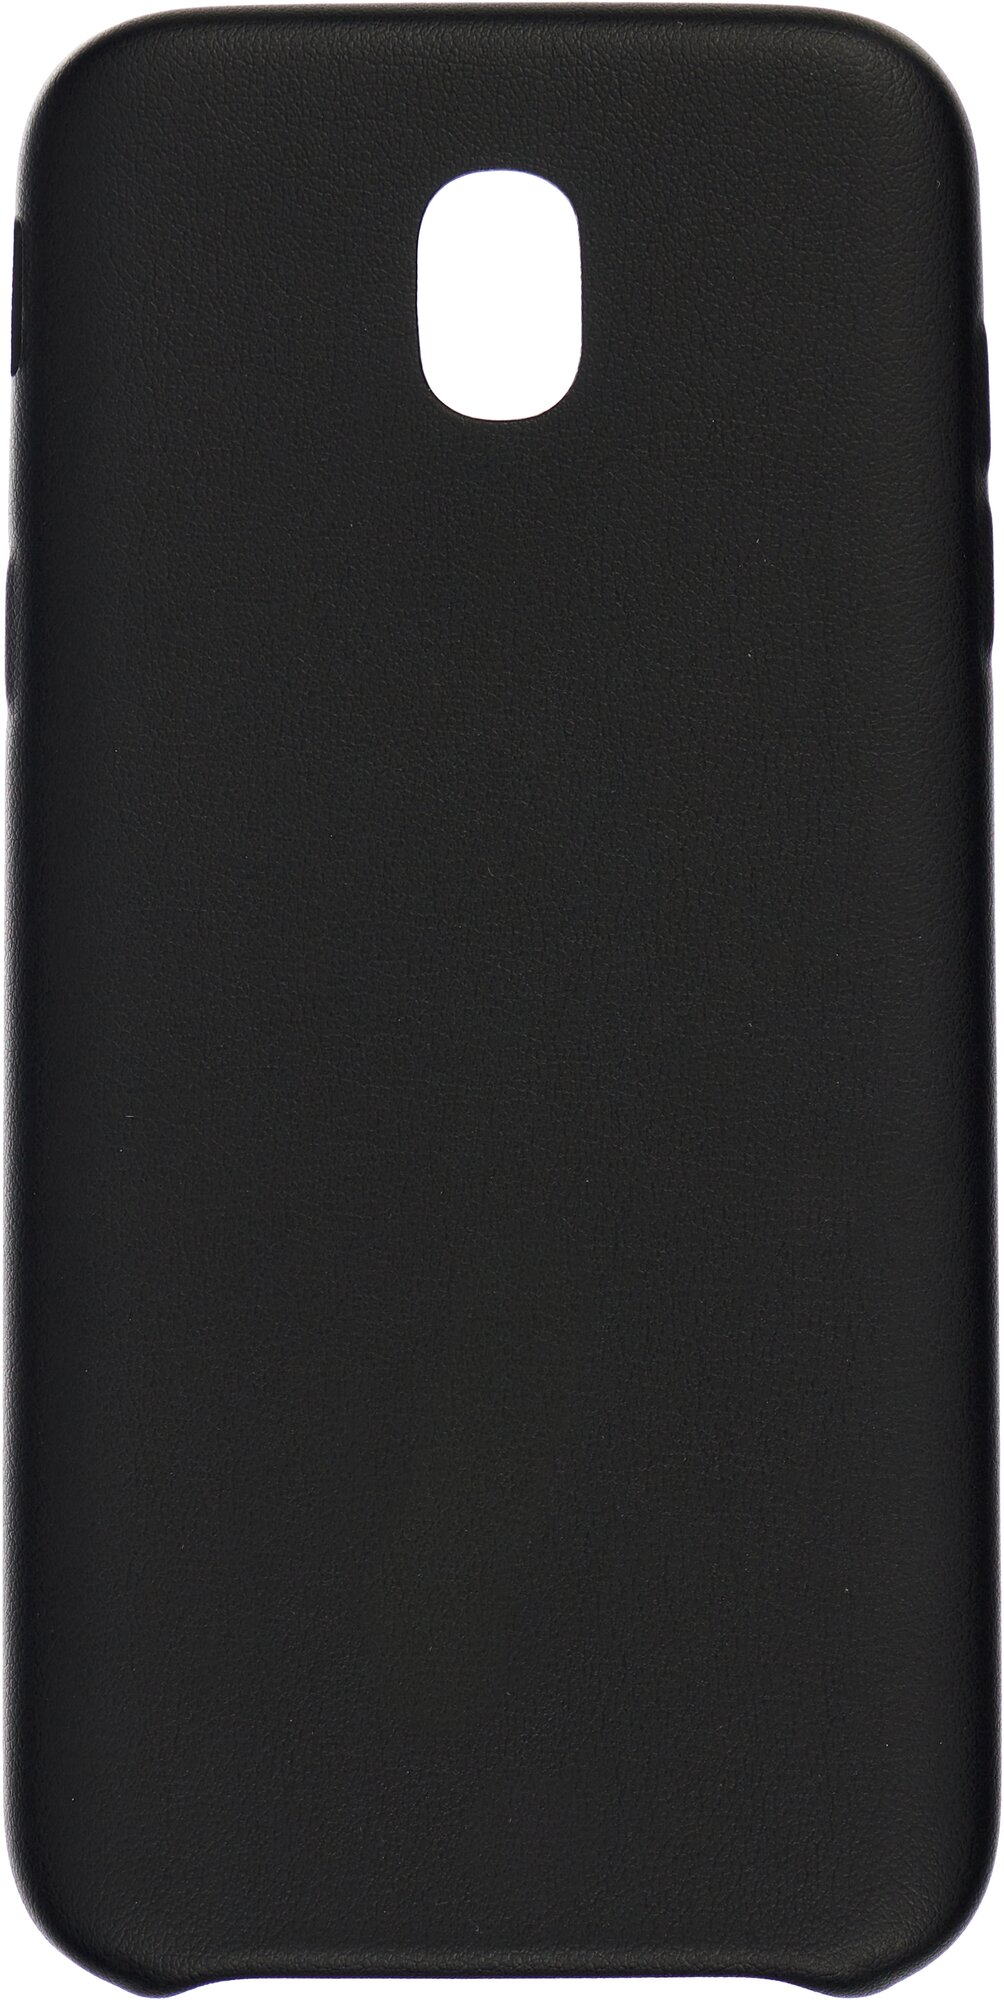 Чехол-крышка G-case Slim Premium для Samsung Galaxy J5 2017, черный - фото №1